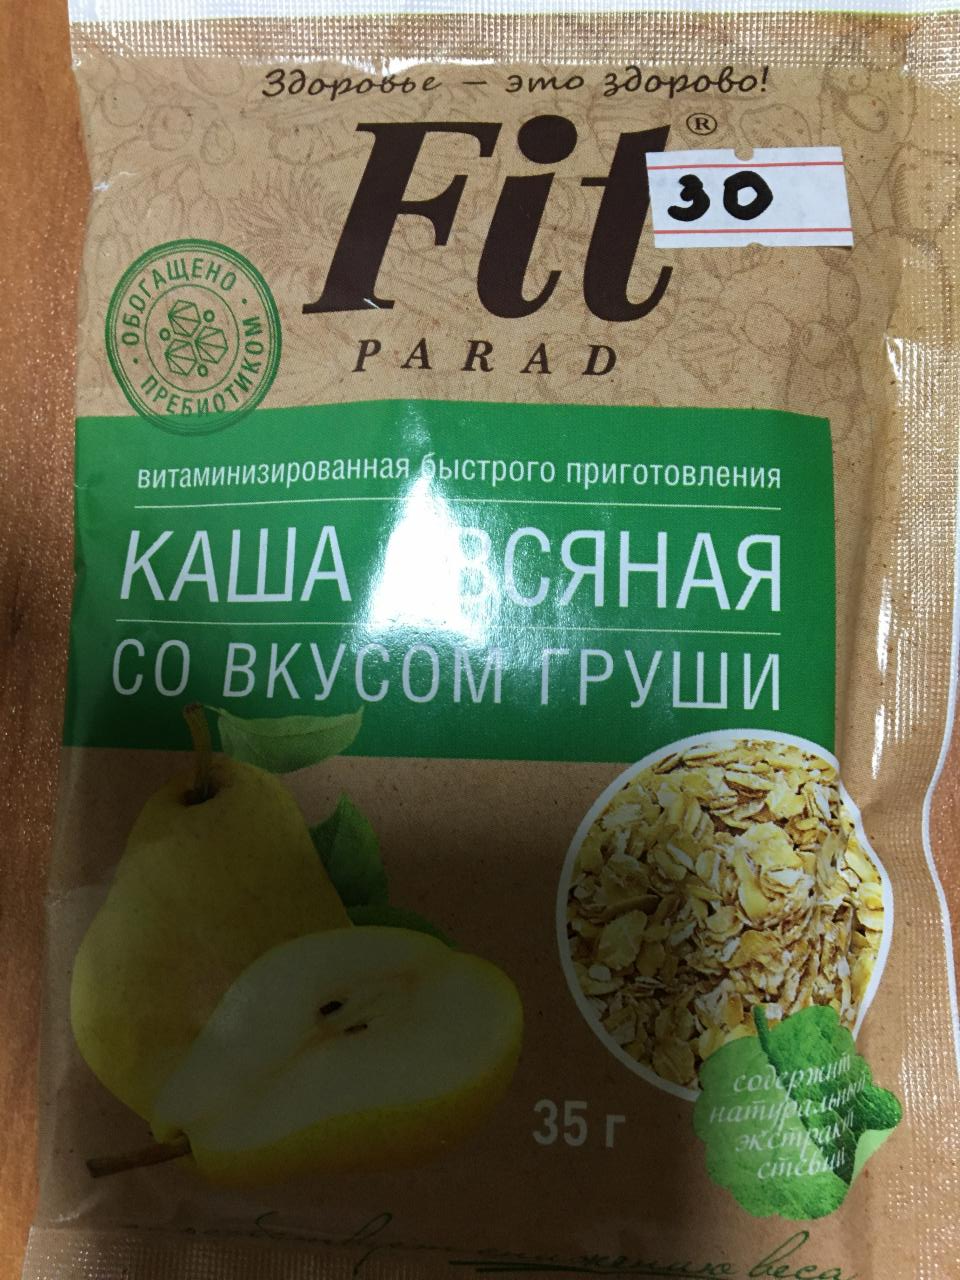 Фото - Каша овсяная со вкусом груши Fit Parad